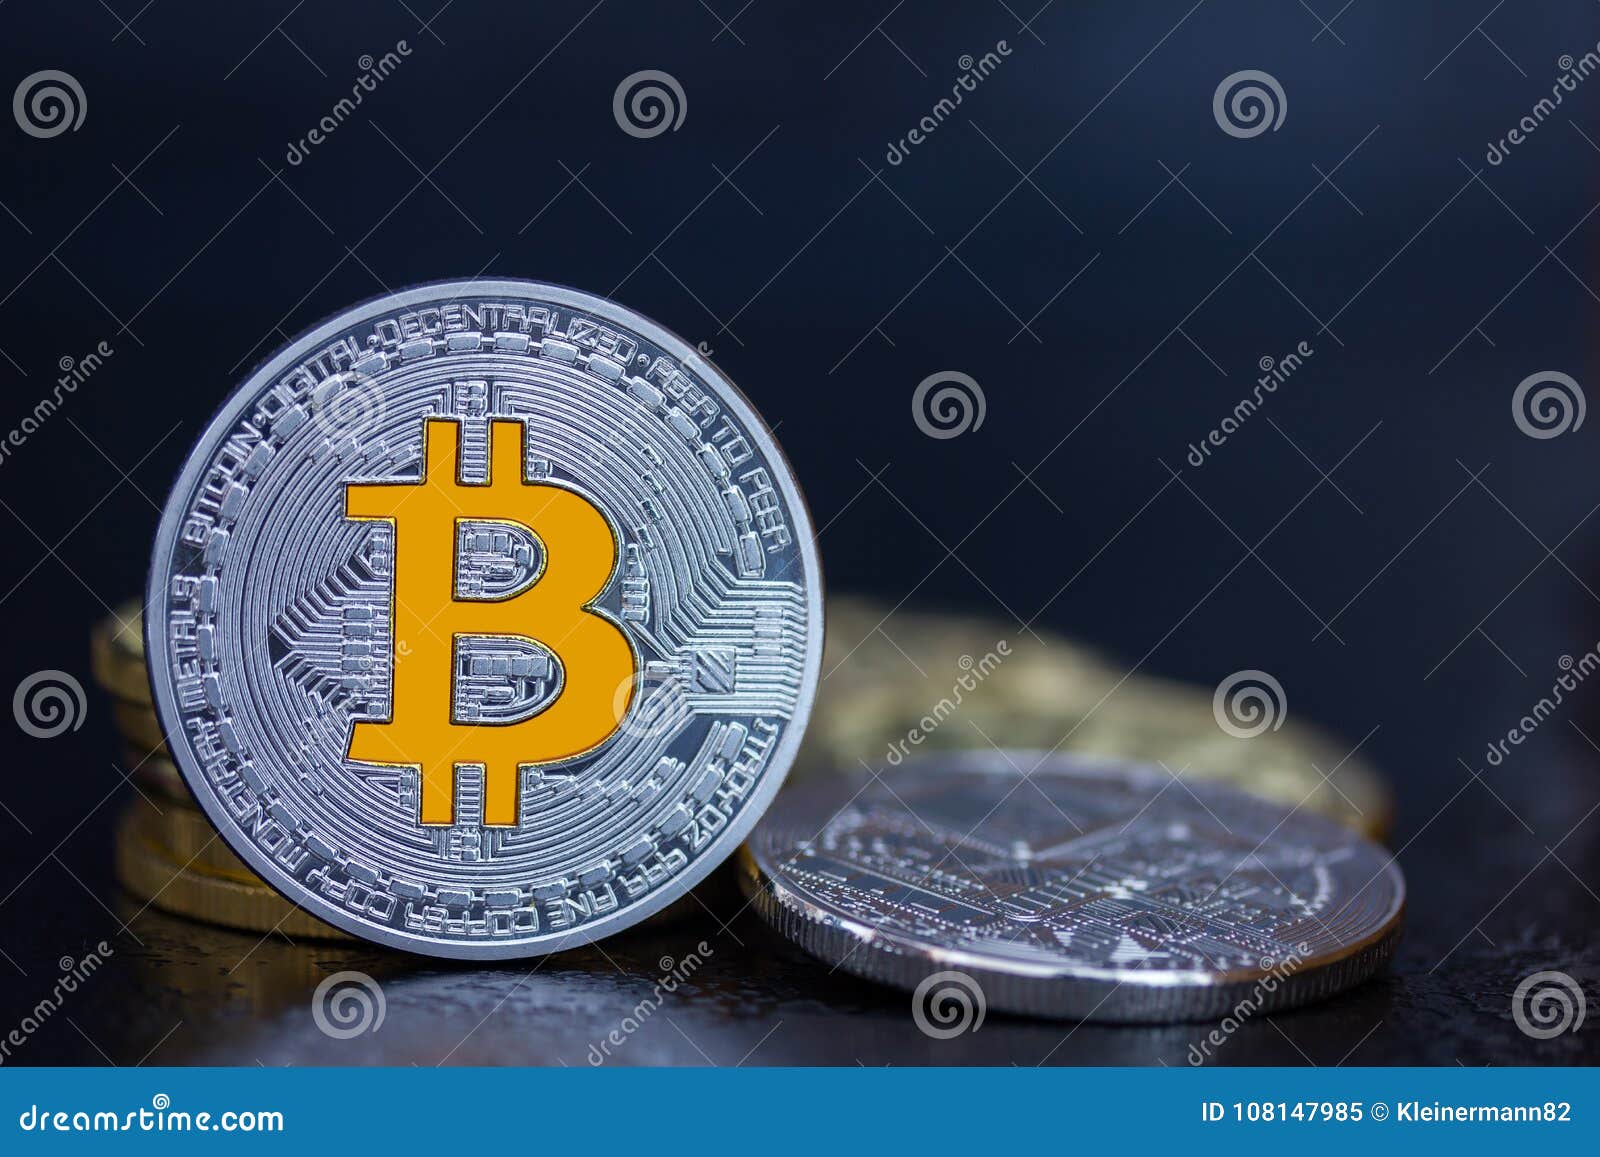 Bitcoin, ecco perché non è una moneta. Il vero valore? La blockchain